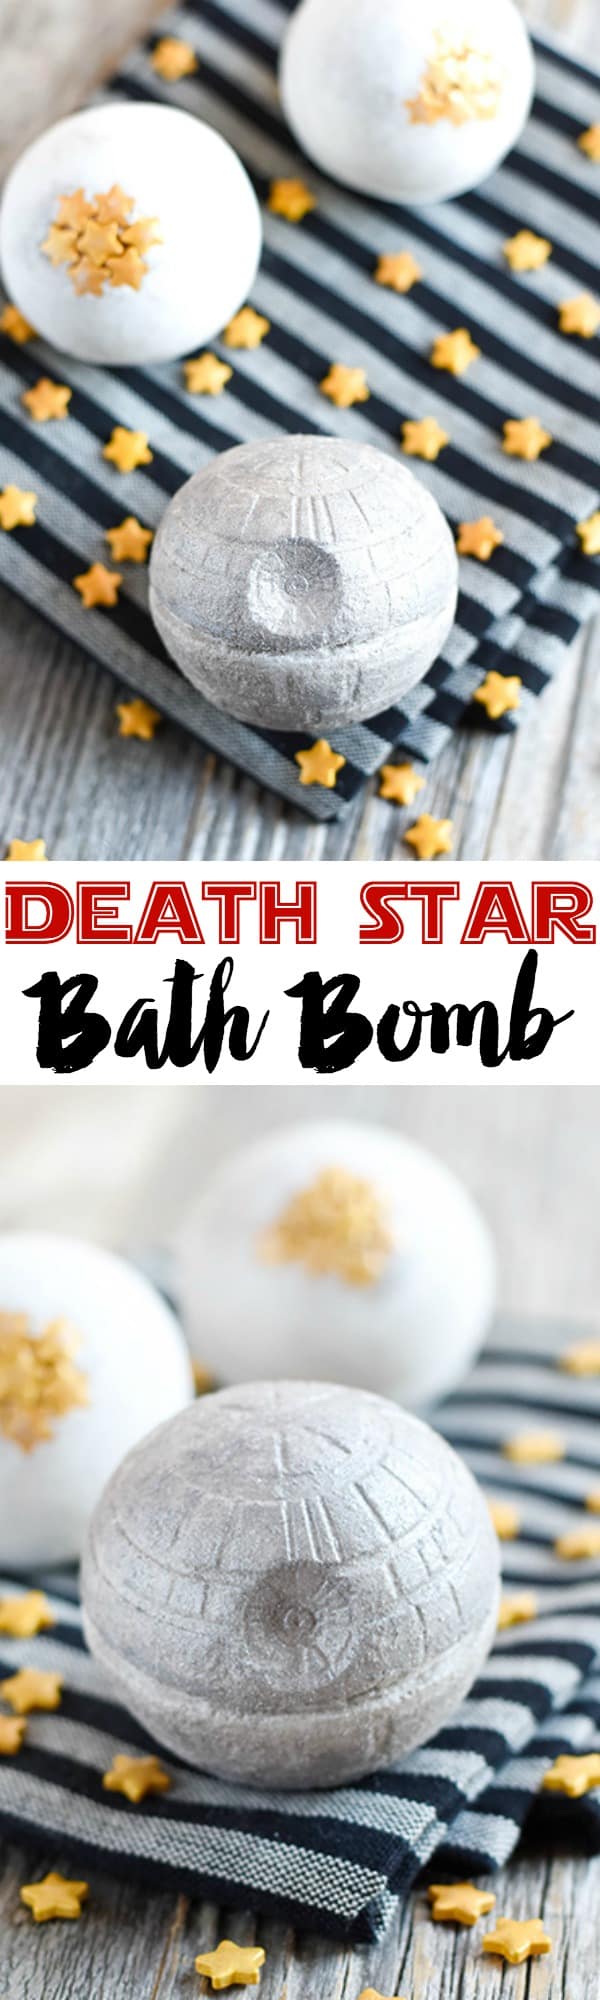 Deat star bath bomb